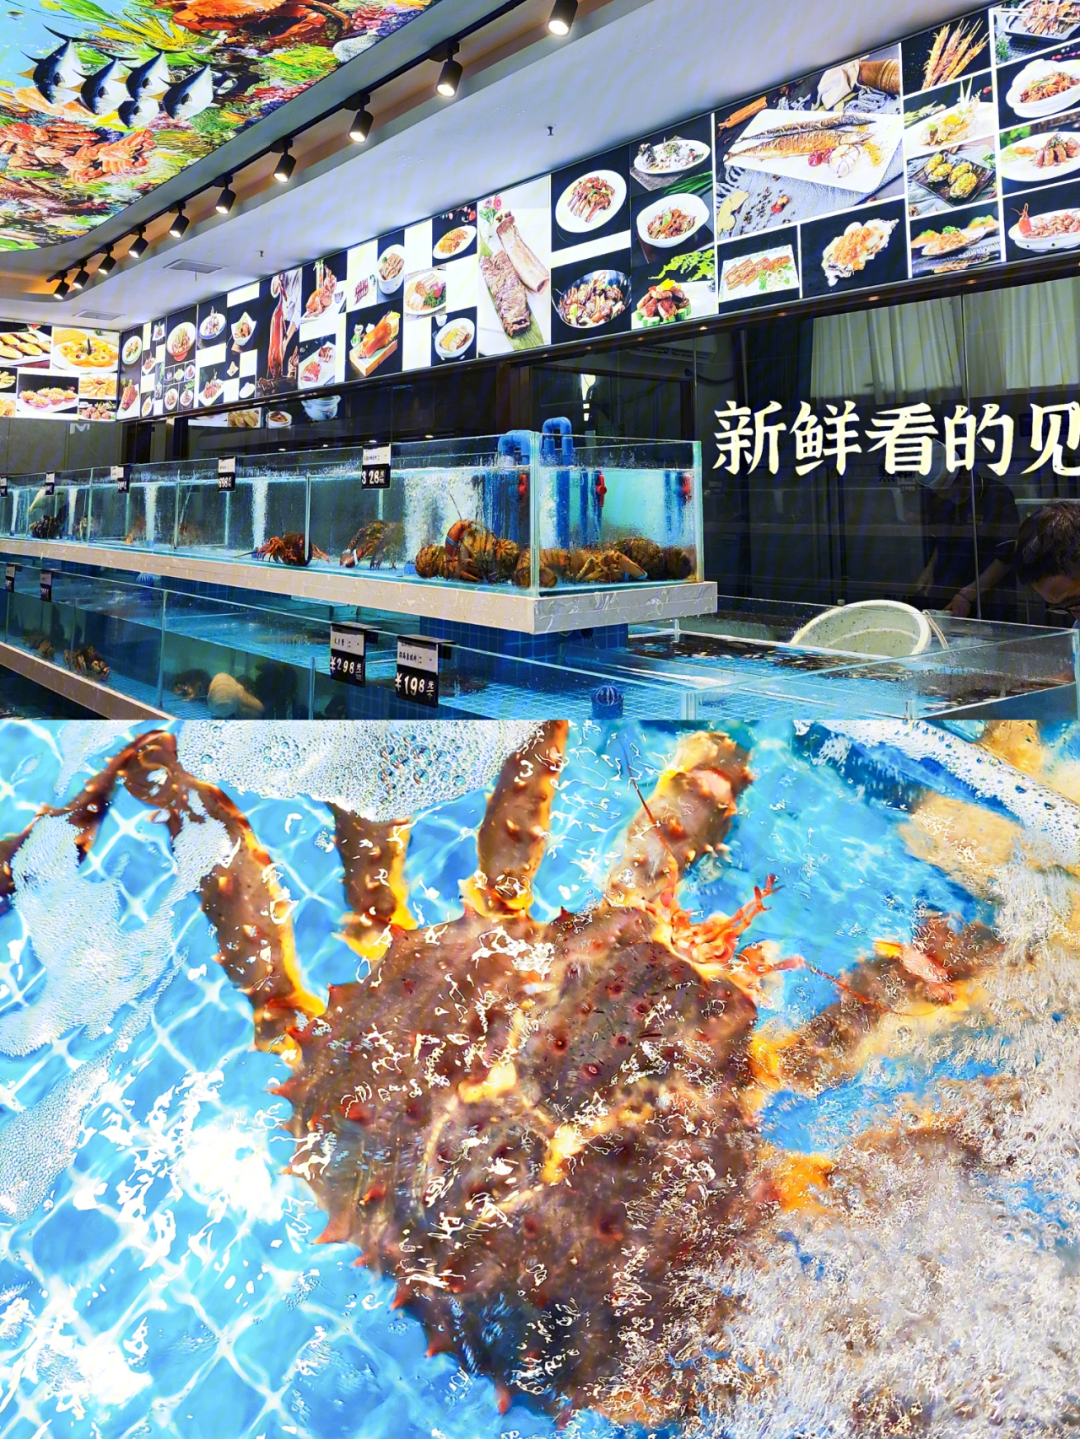 在郑州也能吃到超级正宗的海鲜大餐了